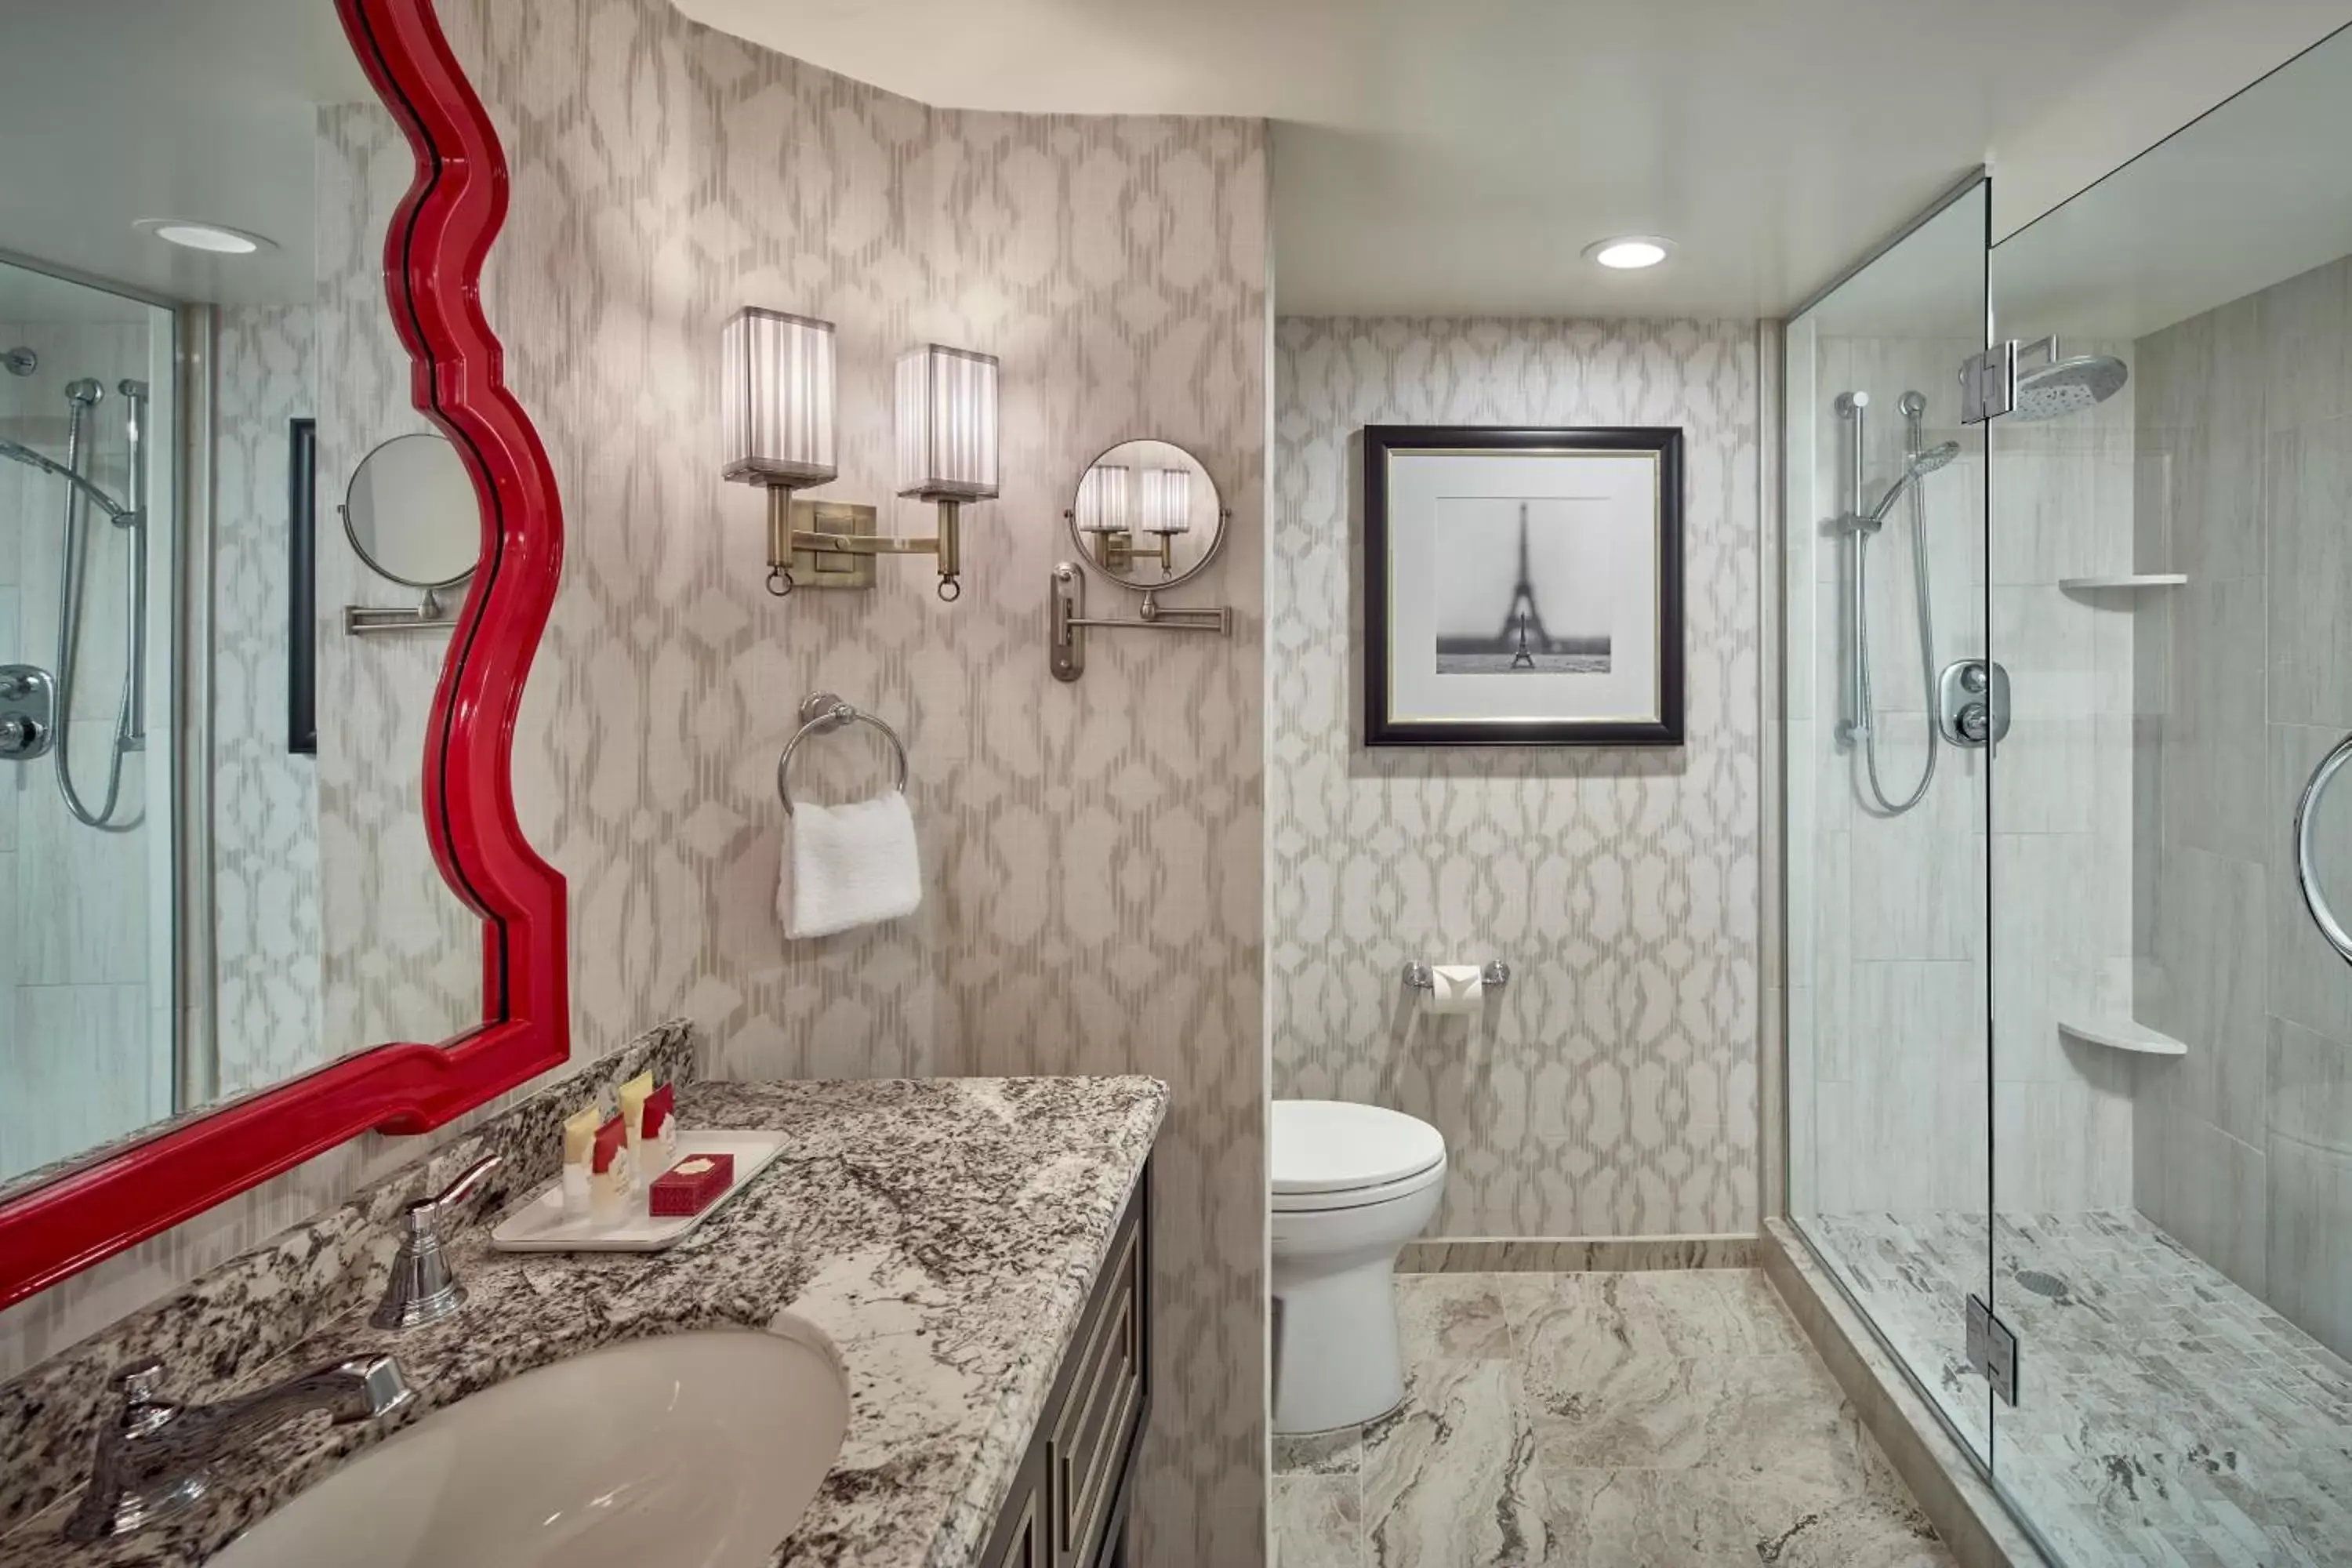 Shower, Bathroom in Paris Las Vegas Hotel & Casino